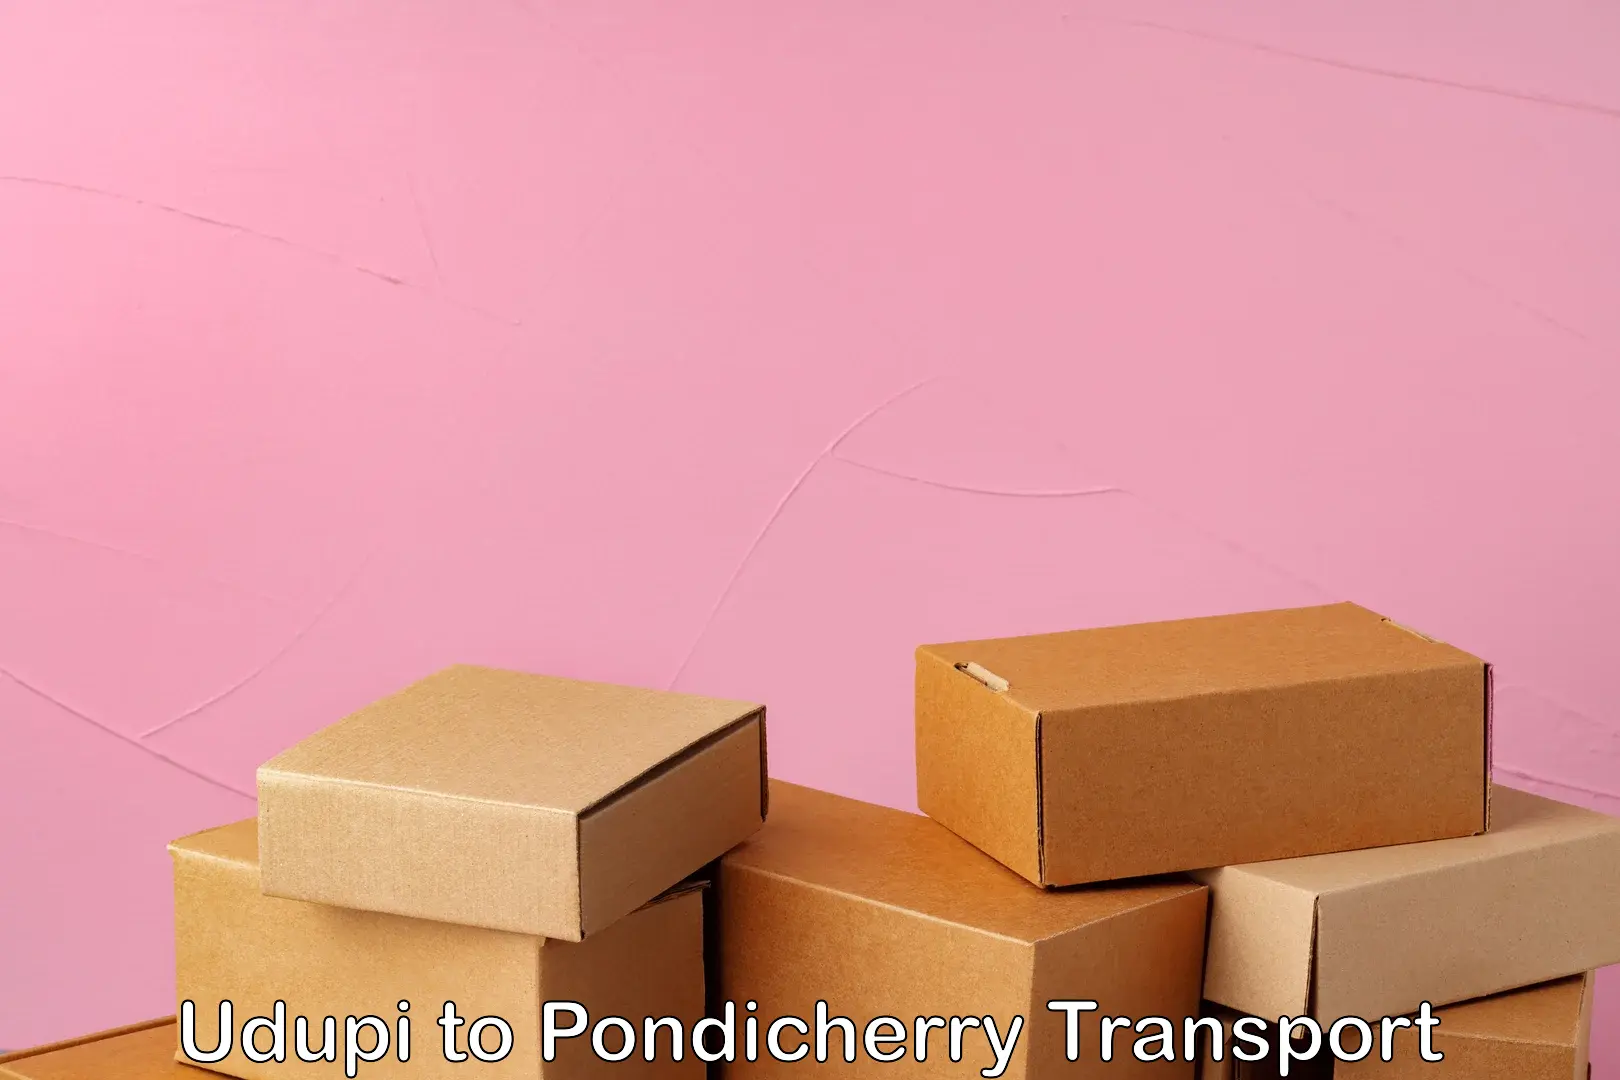 Nearest transport service Udupi to Pondicherry